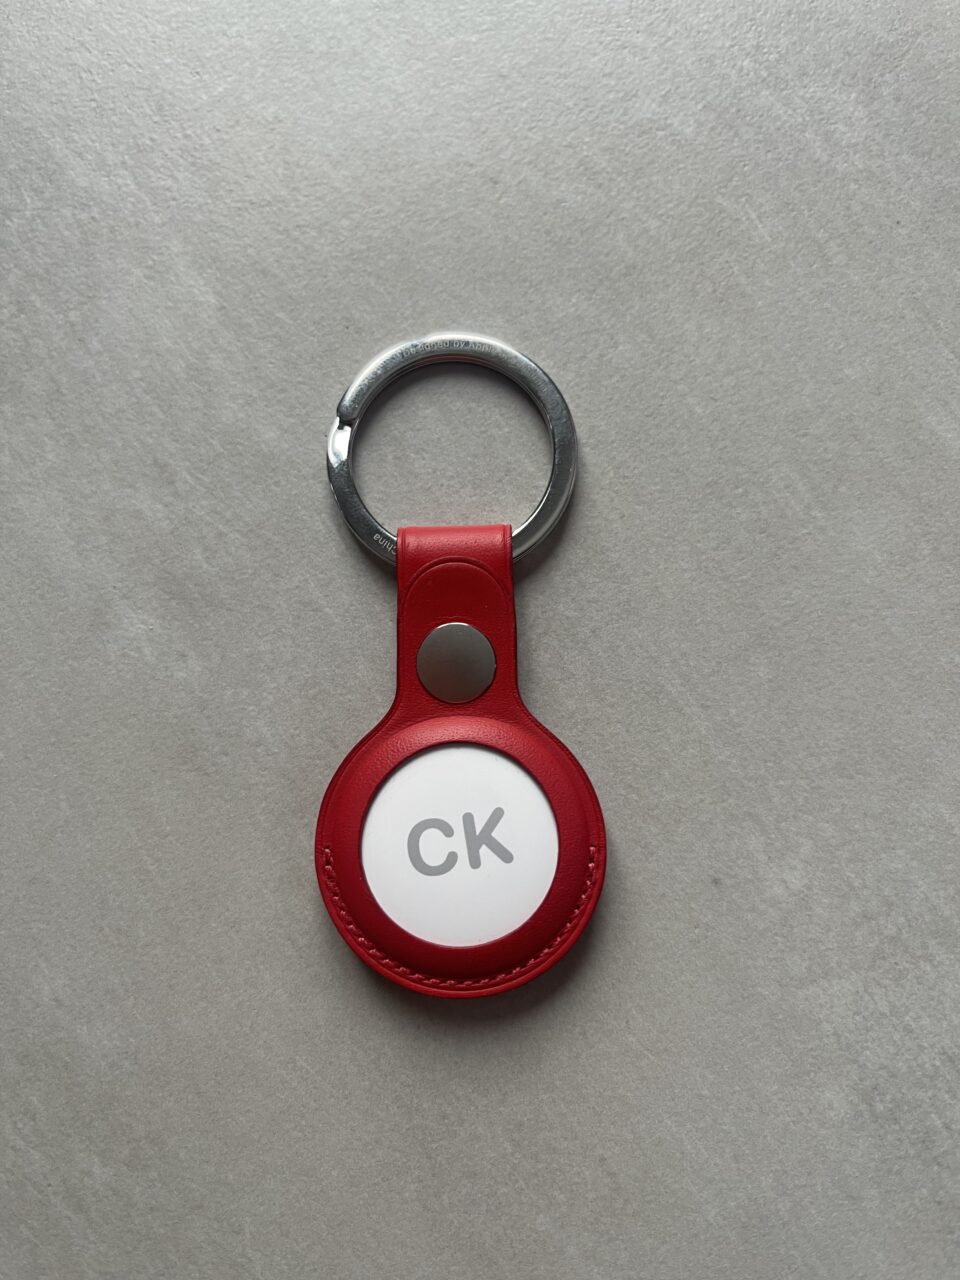 Czerwony AirTag z metalowym kółkiem i okrągłym przywieszkiem z białą wstawką z napisem "CK".